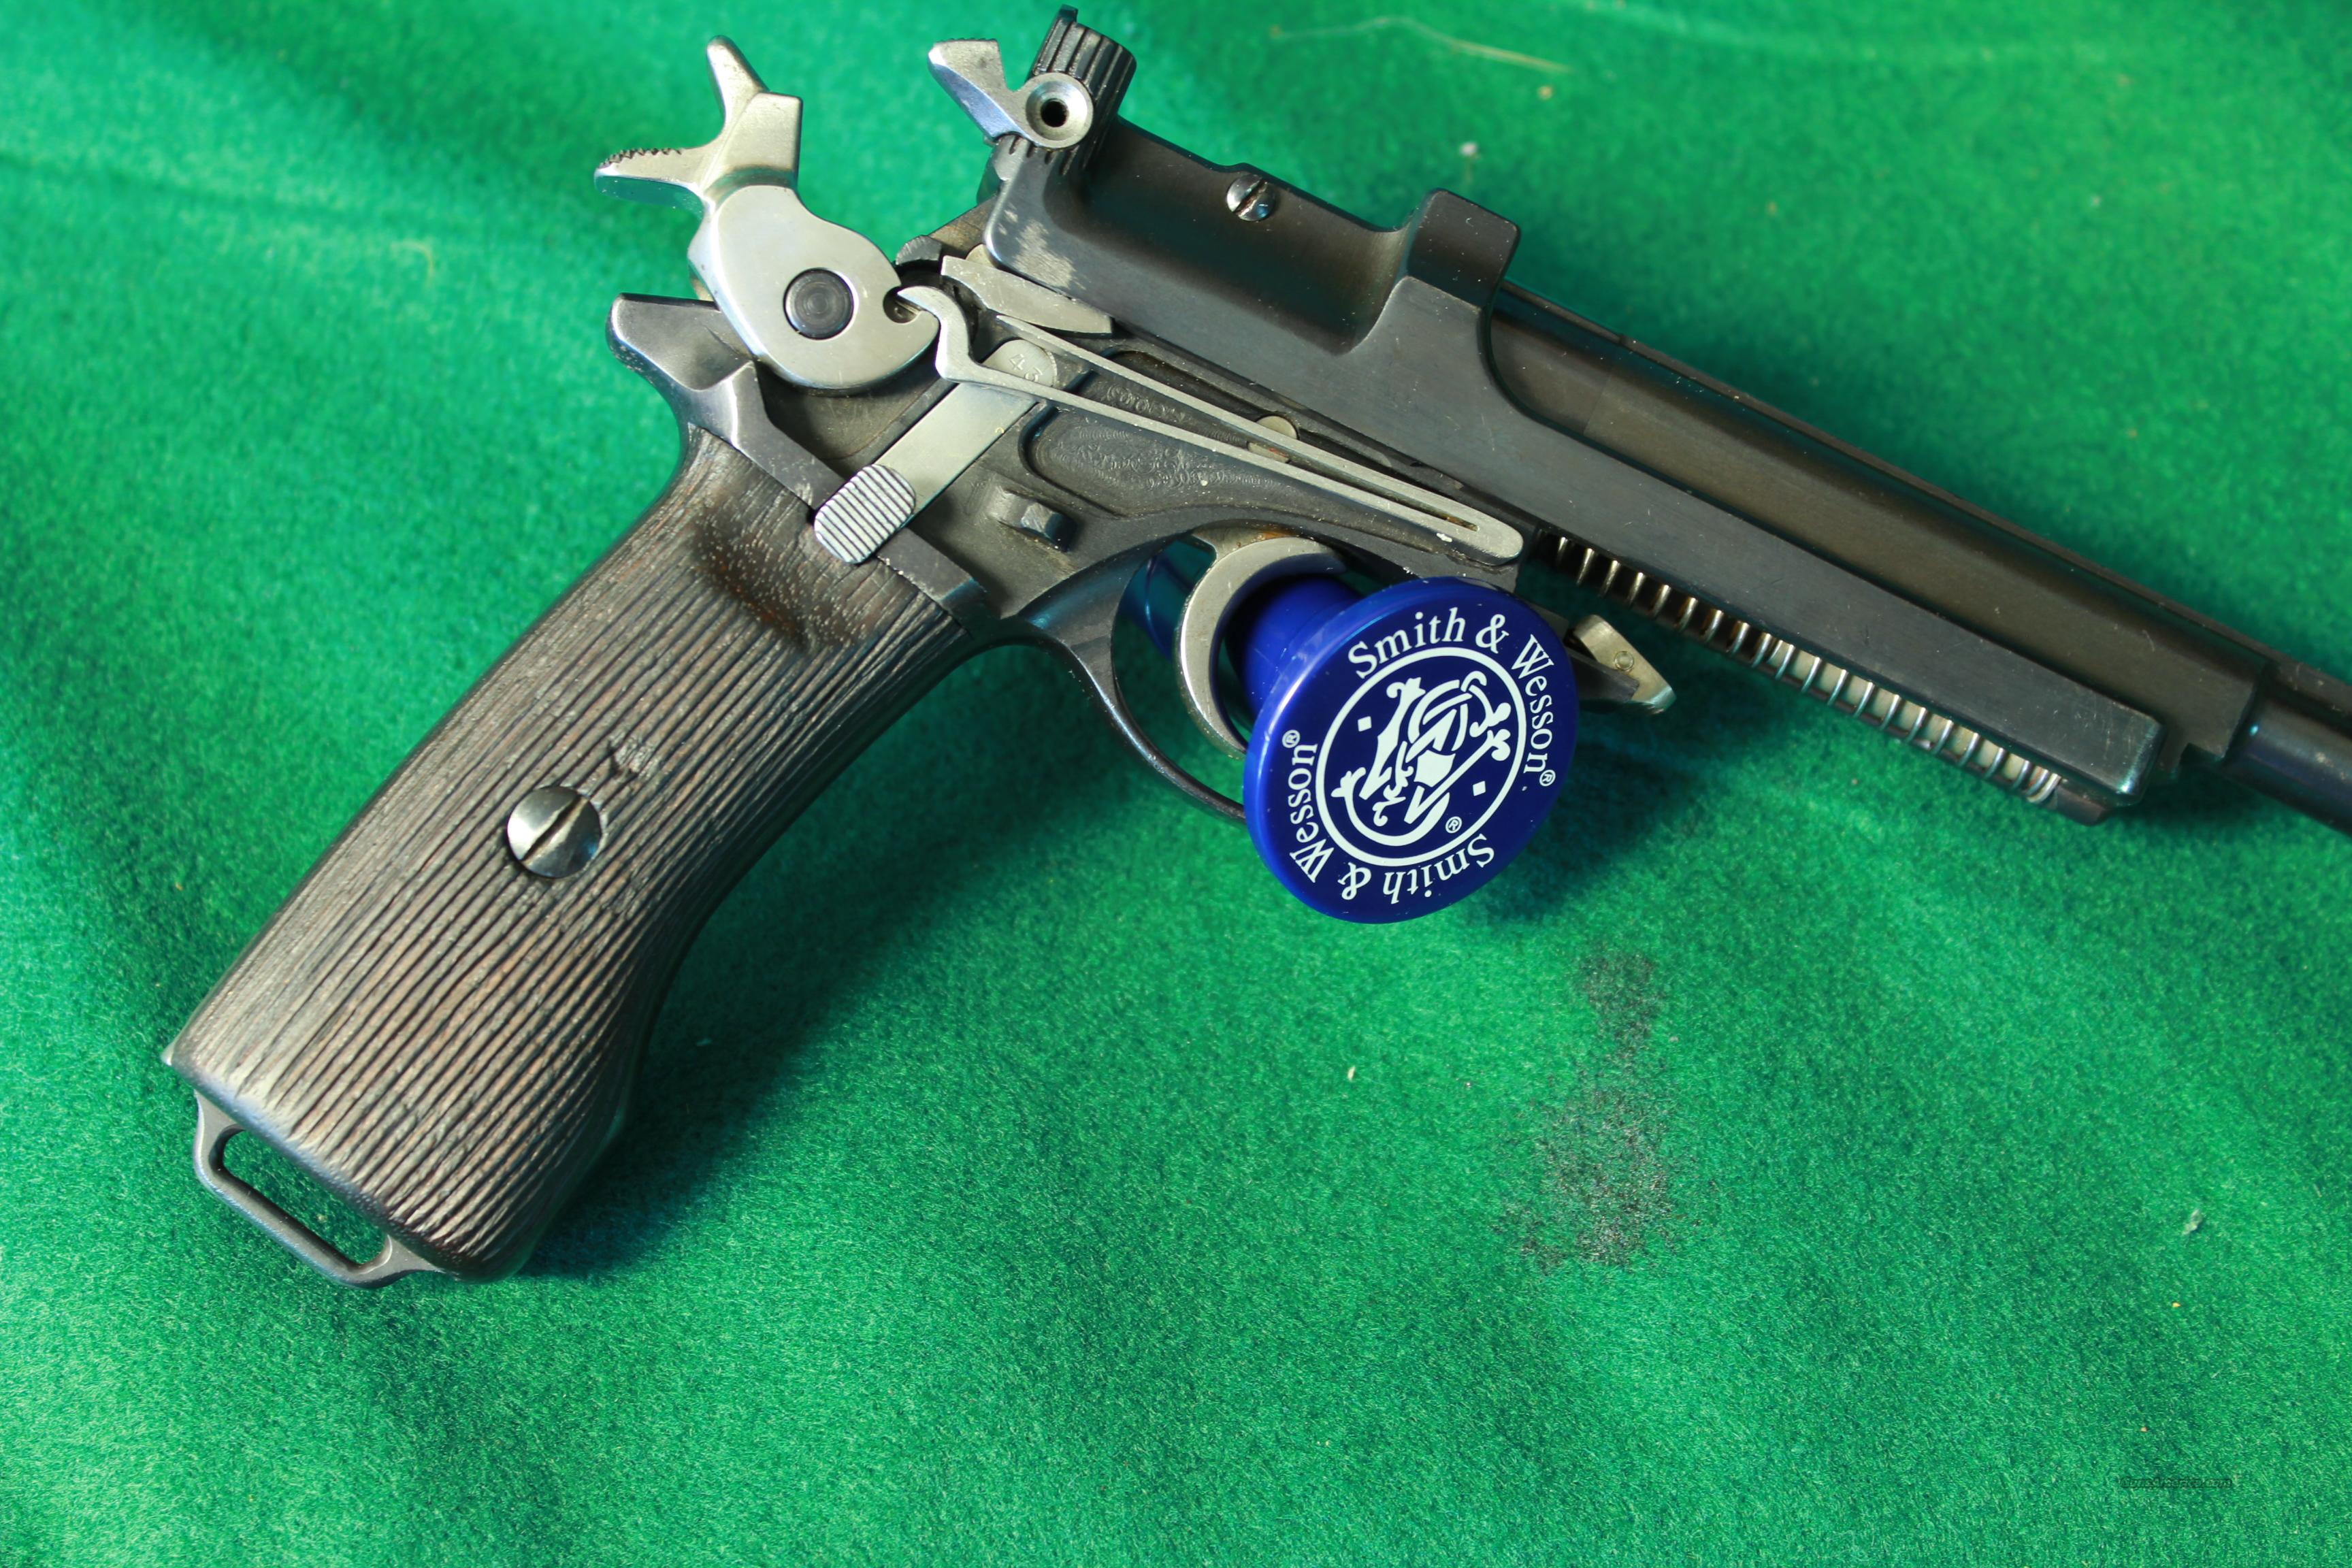 1905 steyr mannlicher pistol for sale